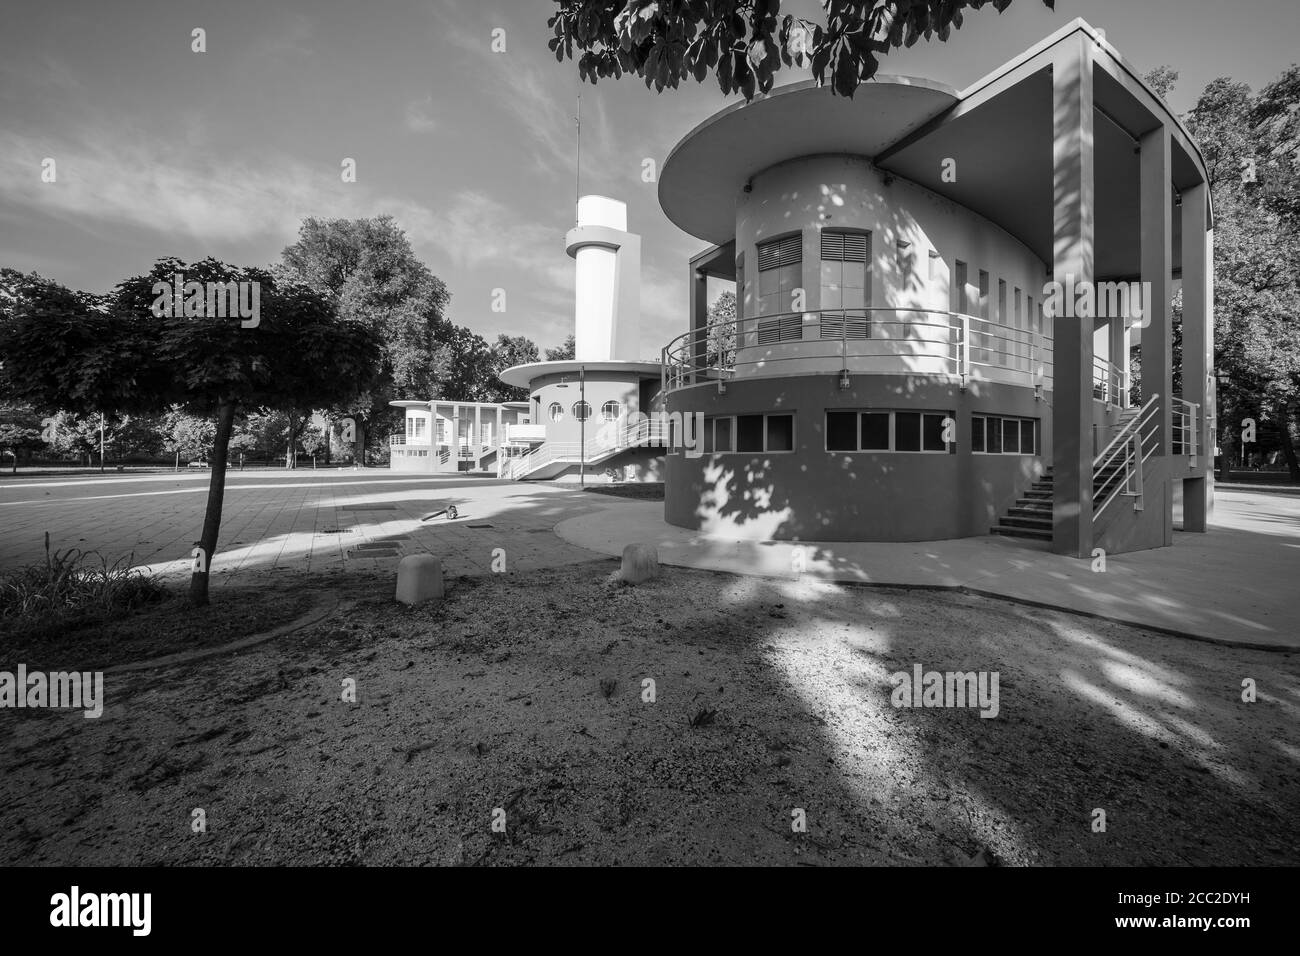 Colonia Farinacci, Cremona, Italien, 1936, Carlo Gaudenzi, Italienische modernistische / futuristische Architektur der faschistischen Ära, s&w Architekturfotografie Stockfoto